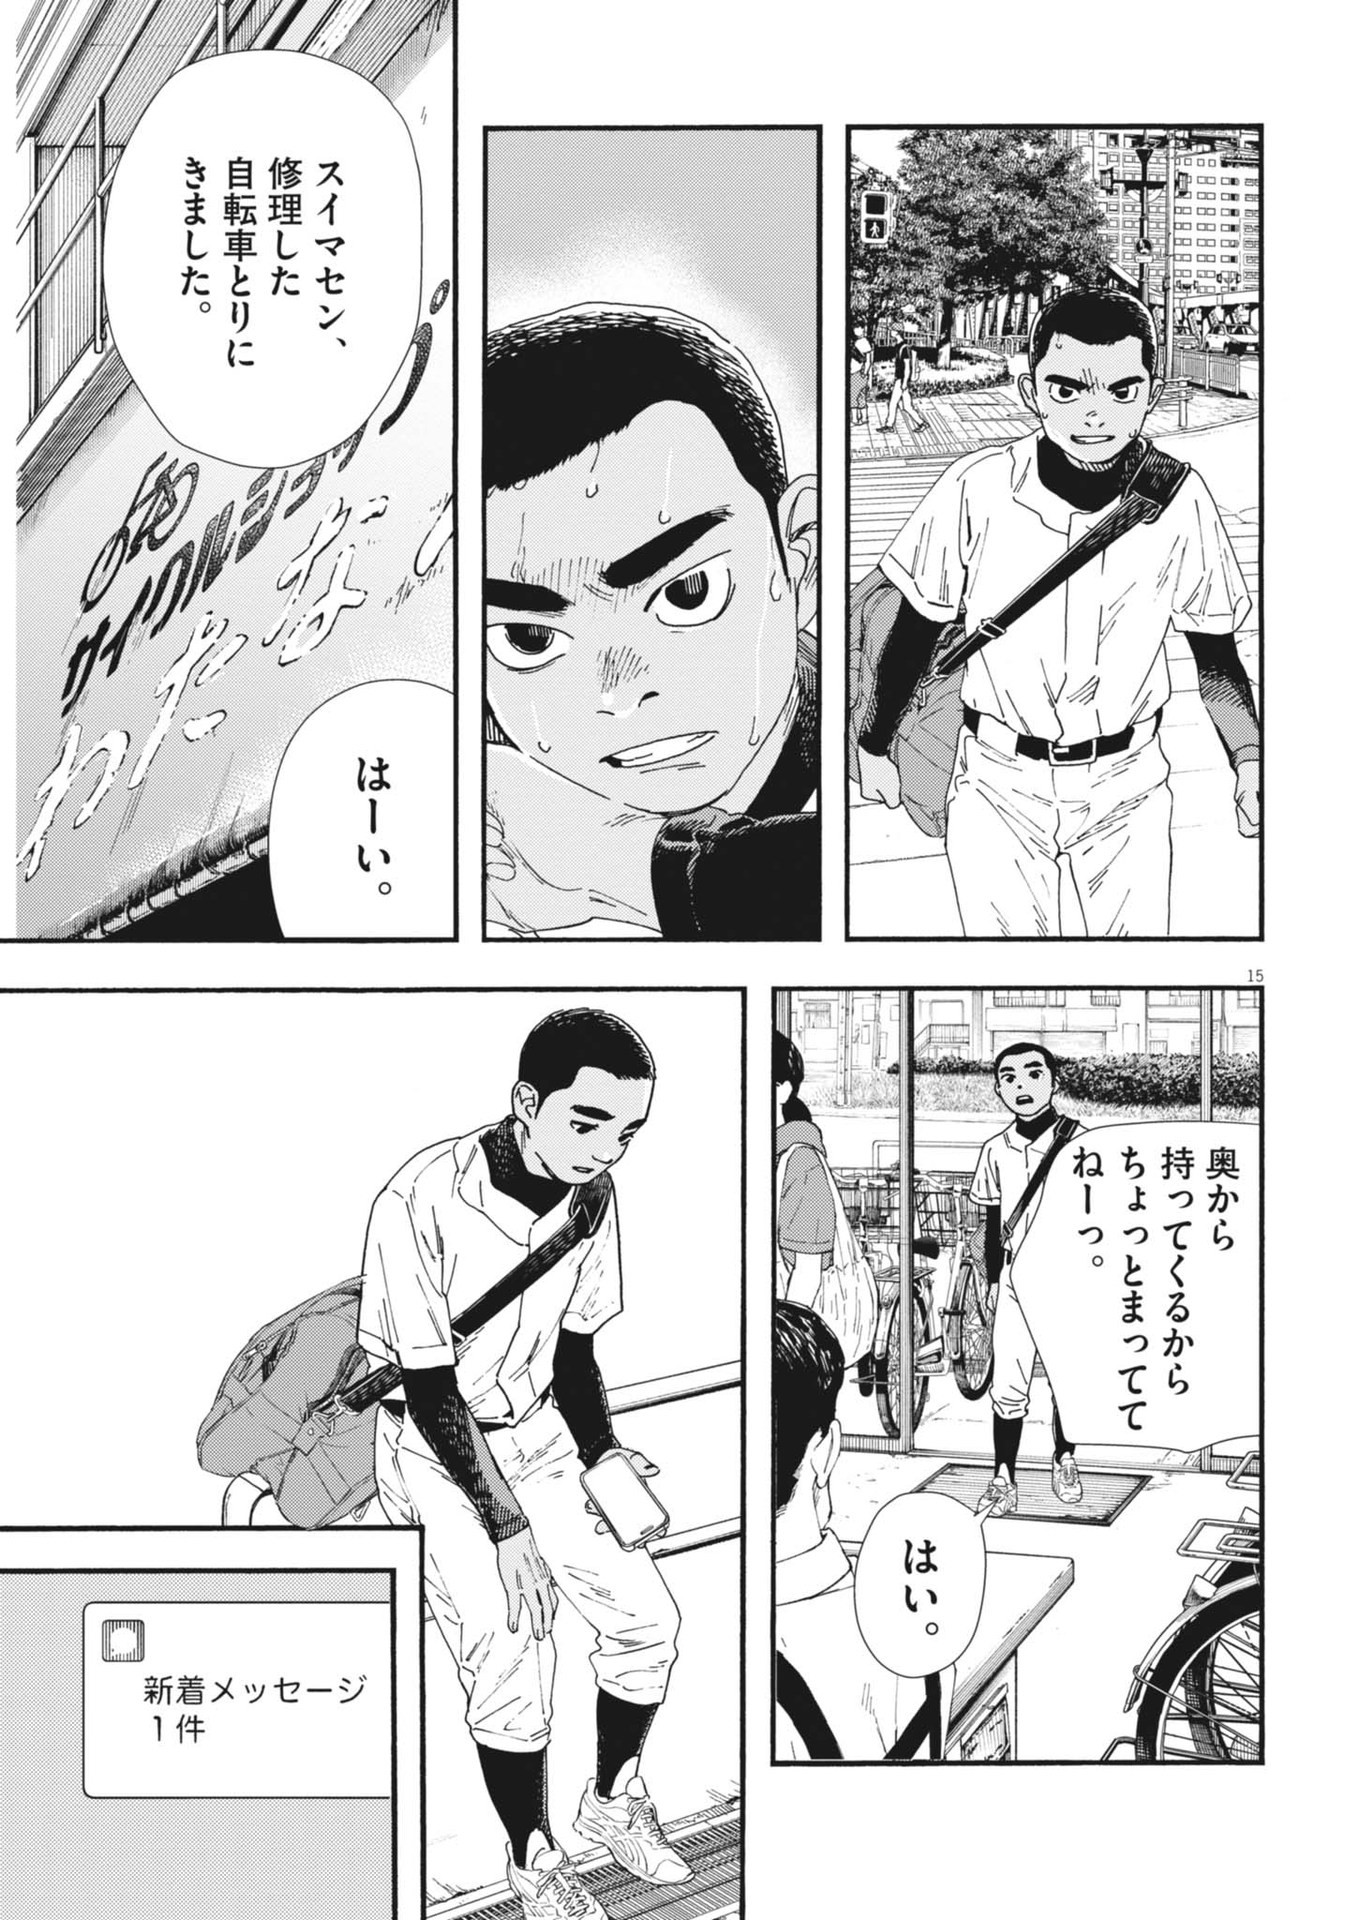 Hoshino-kun, Shitagatte! - Chapter 9 - Page 15